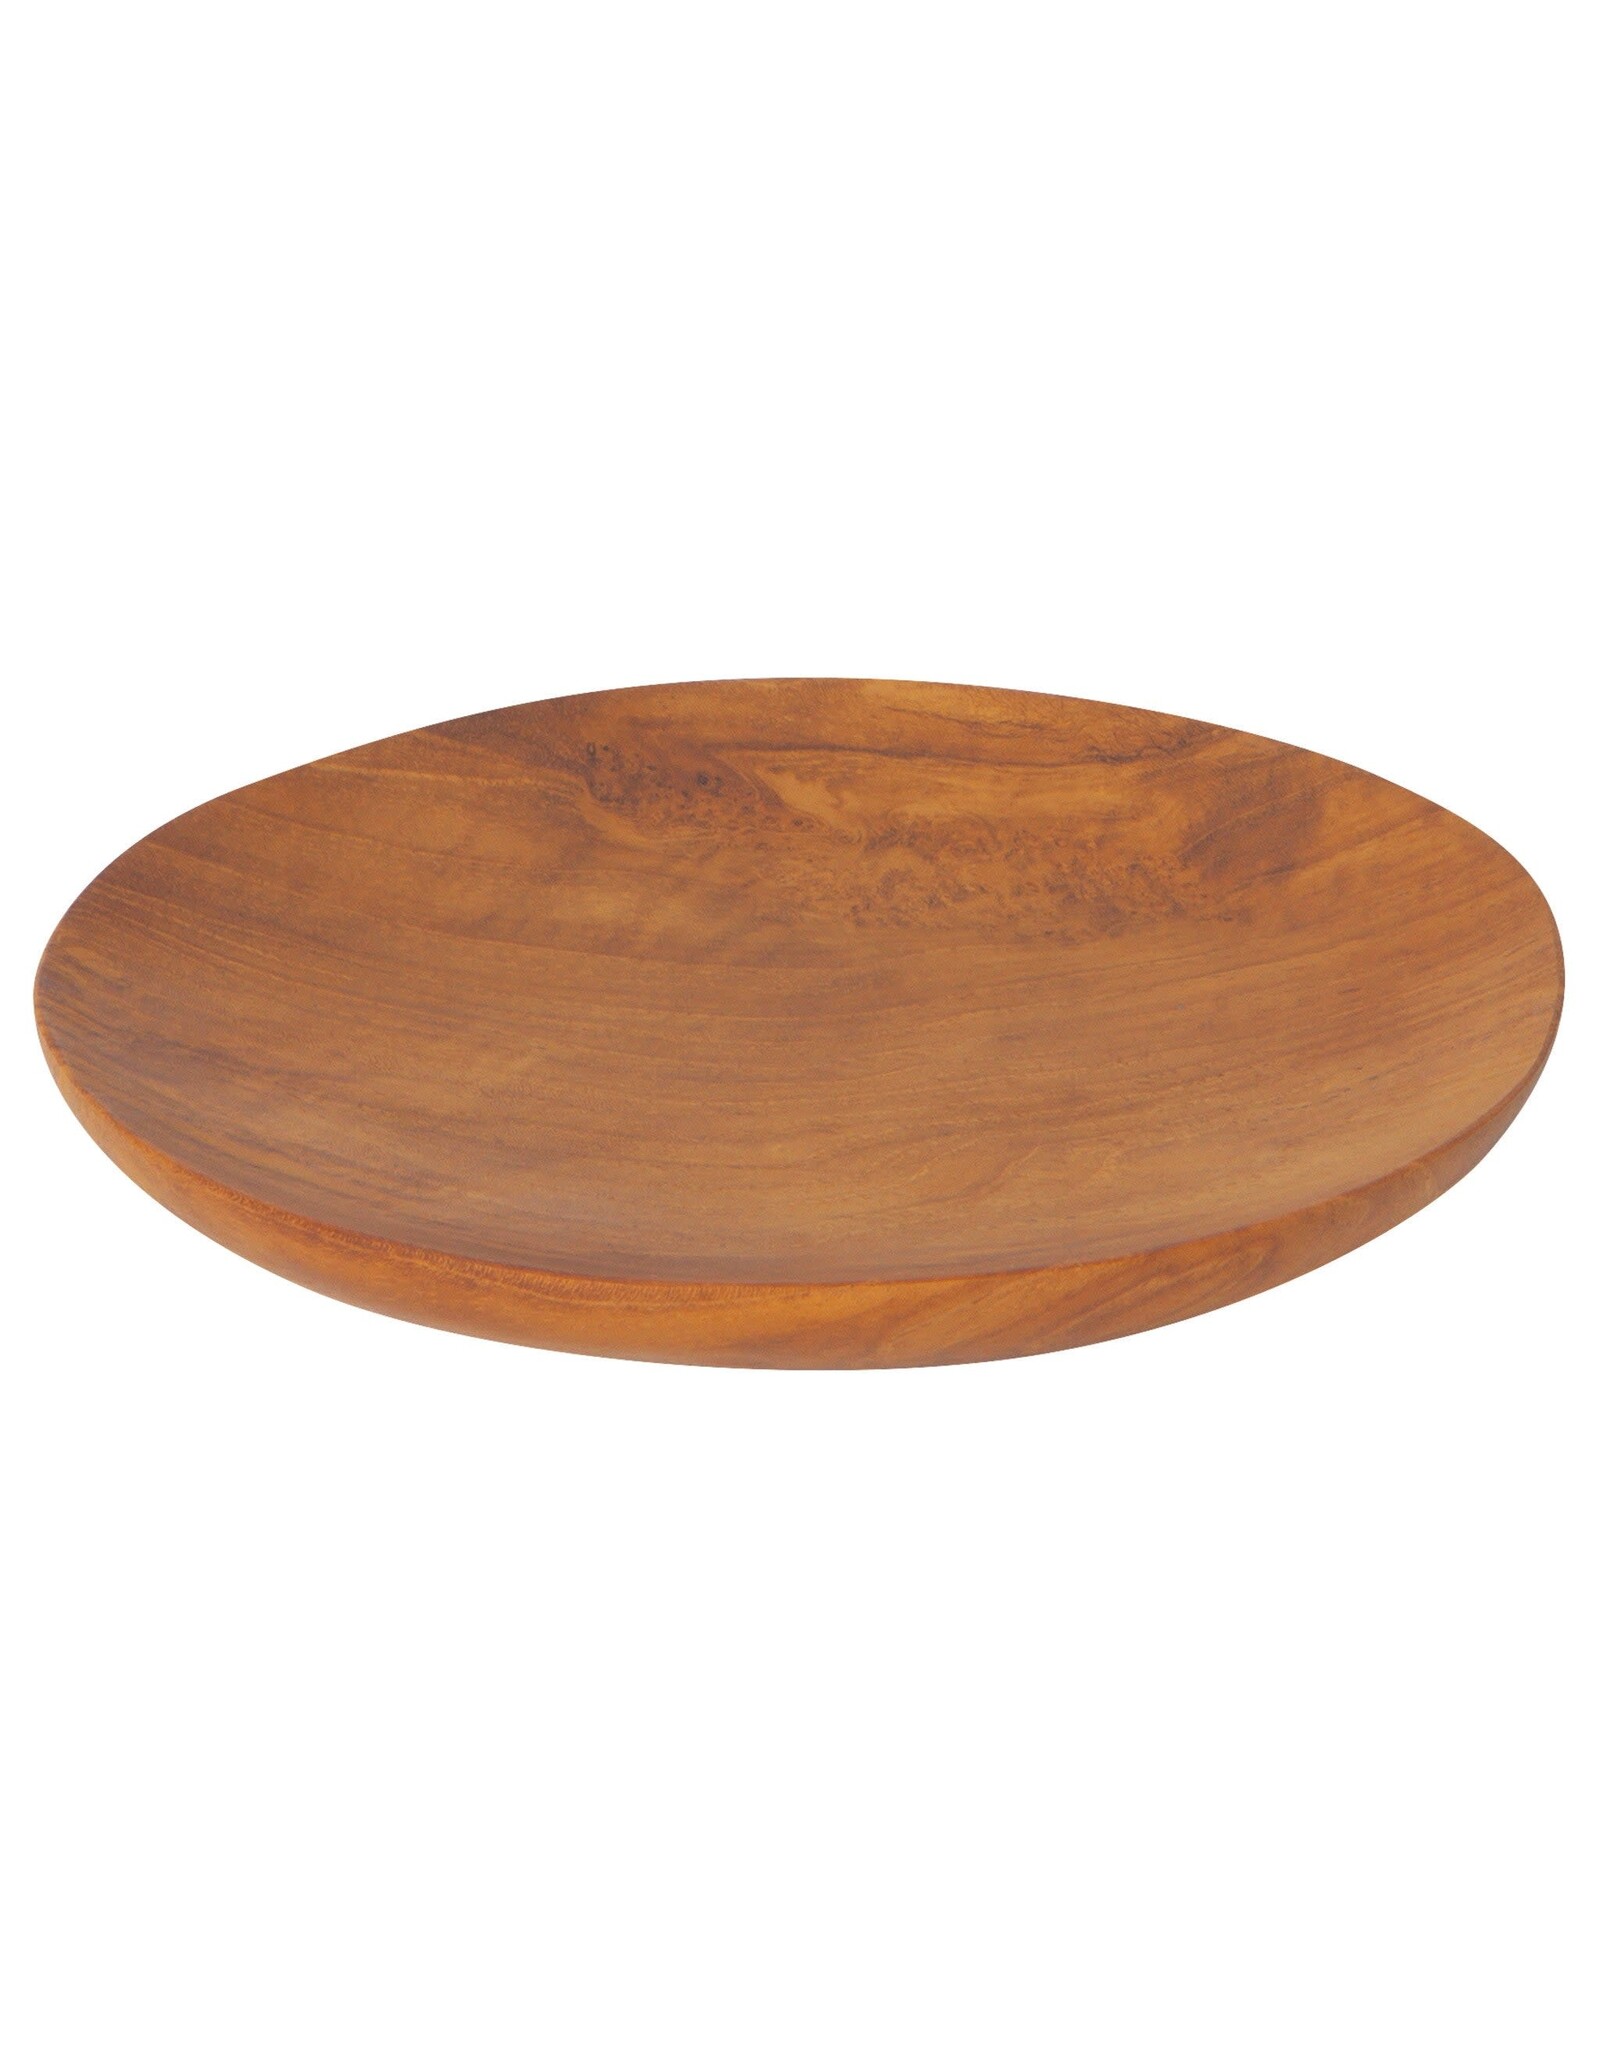 Teak Wood Round Plate - 5 1/4"